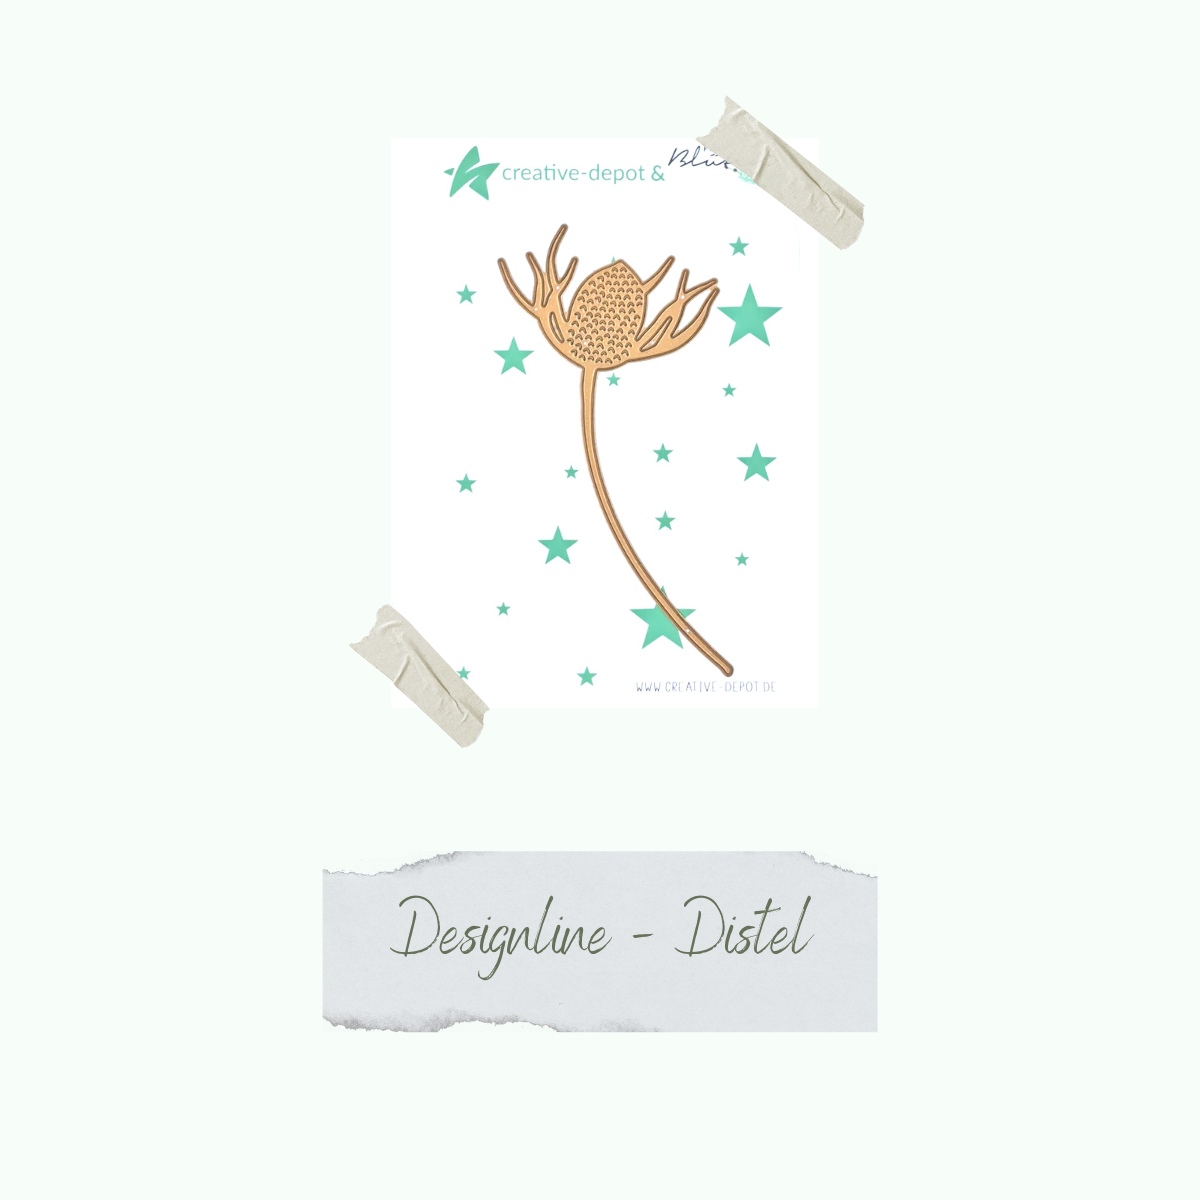 Die - Designline - Distel